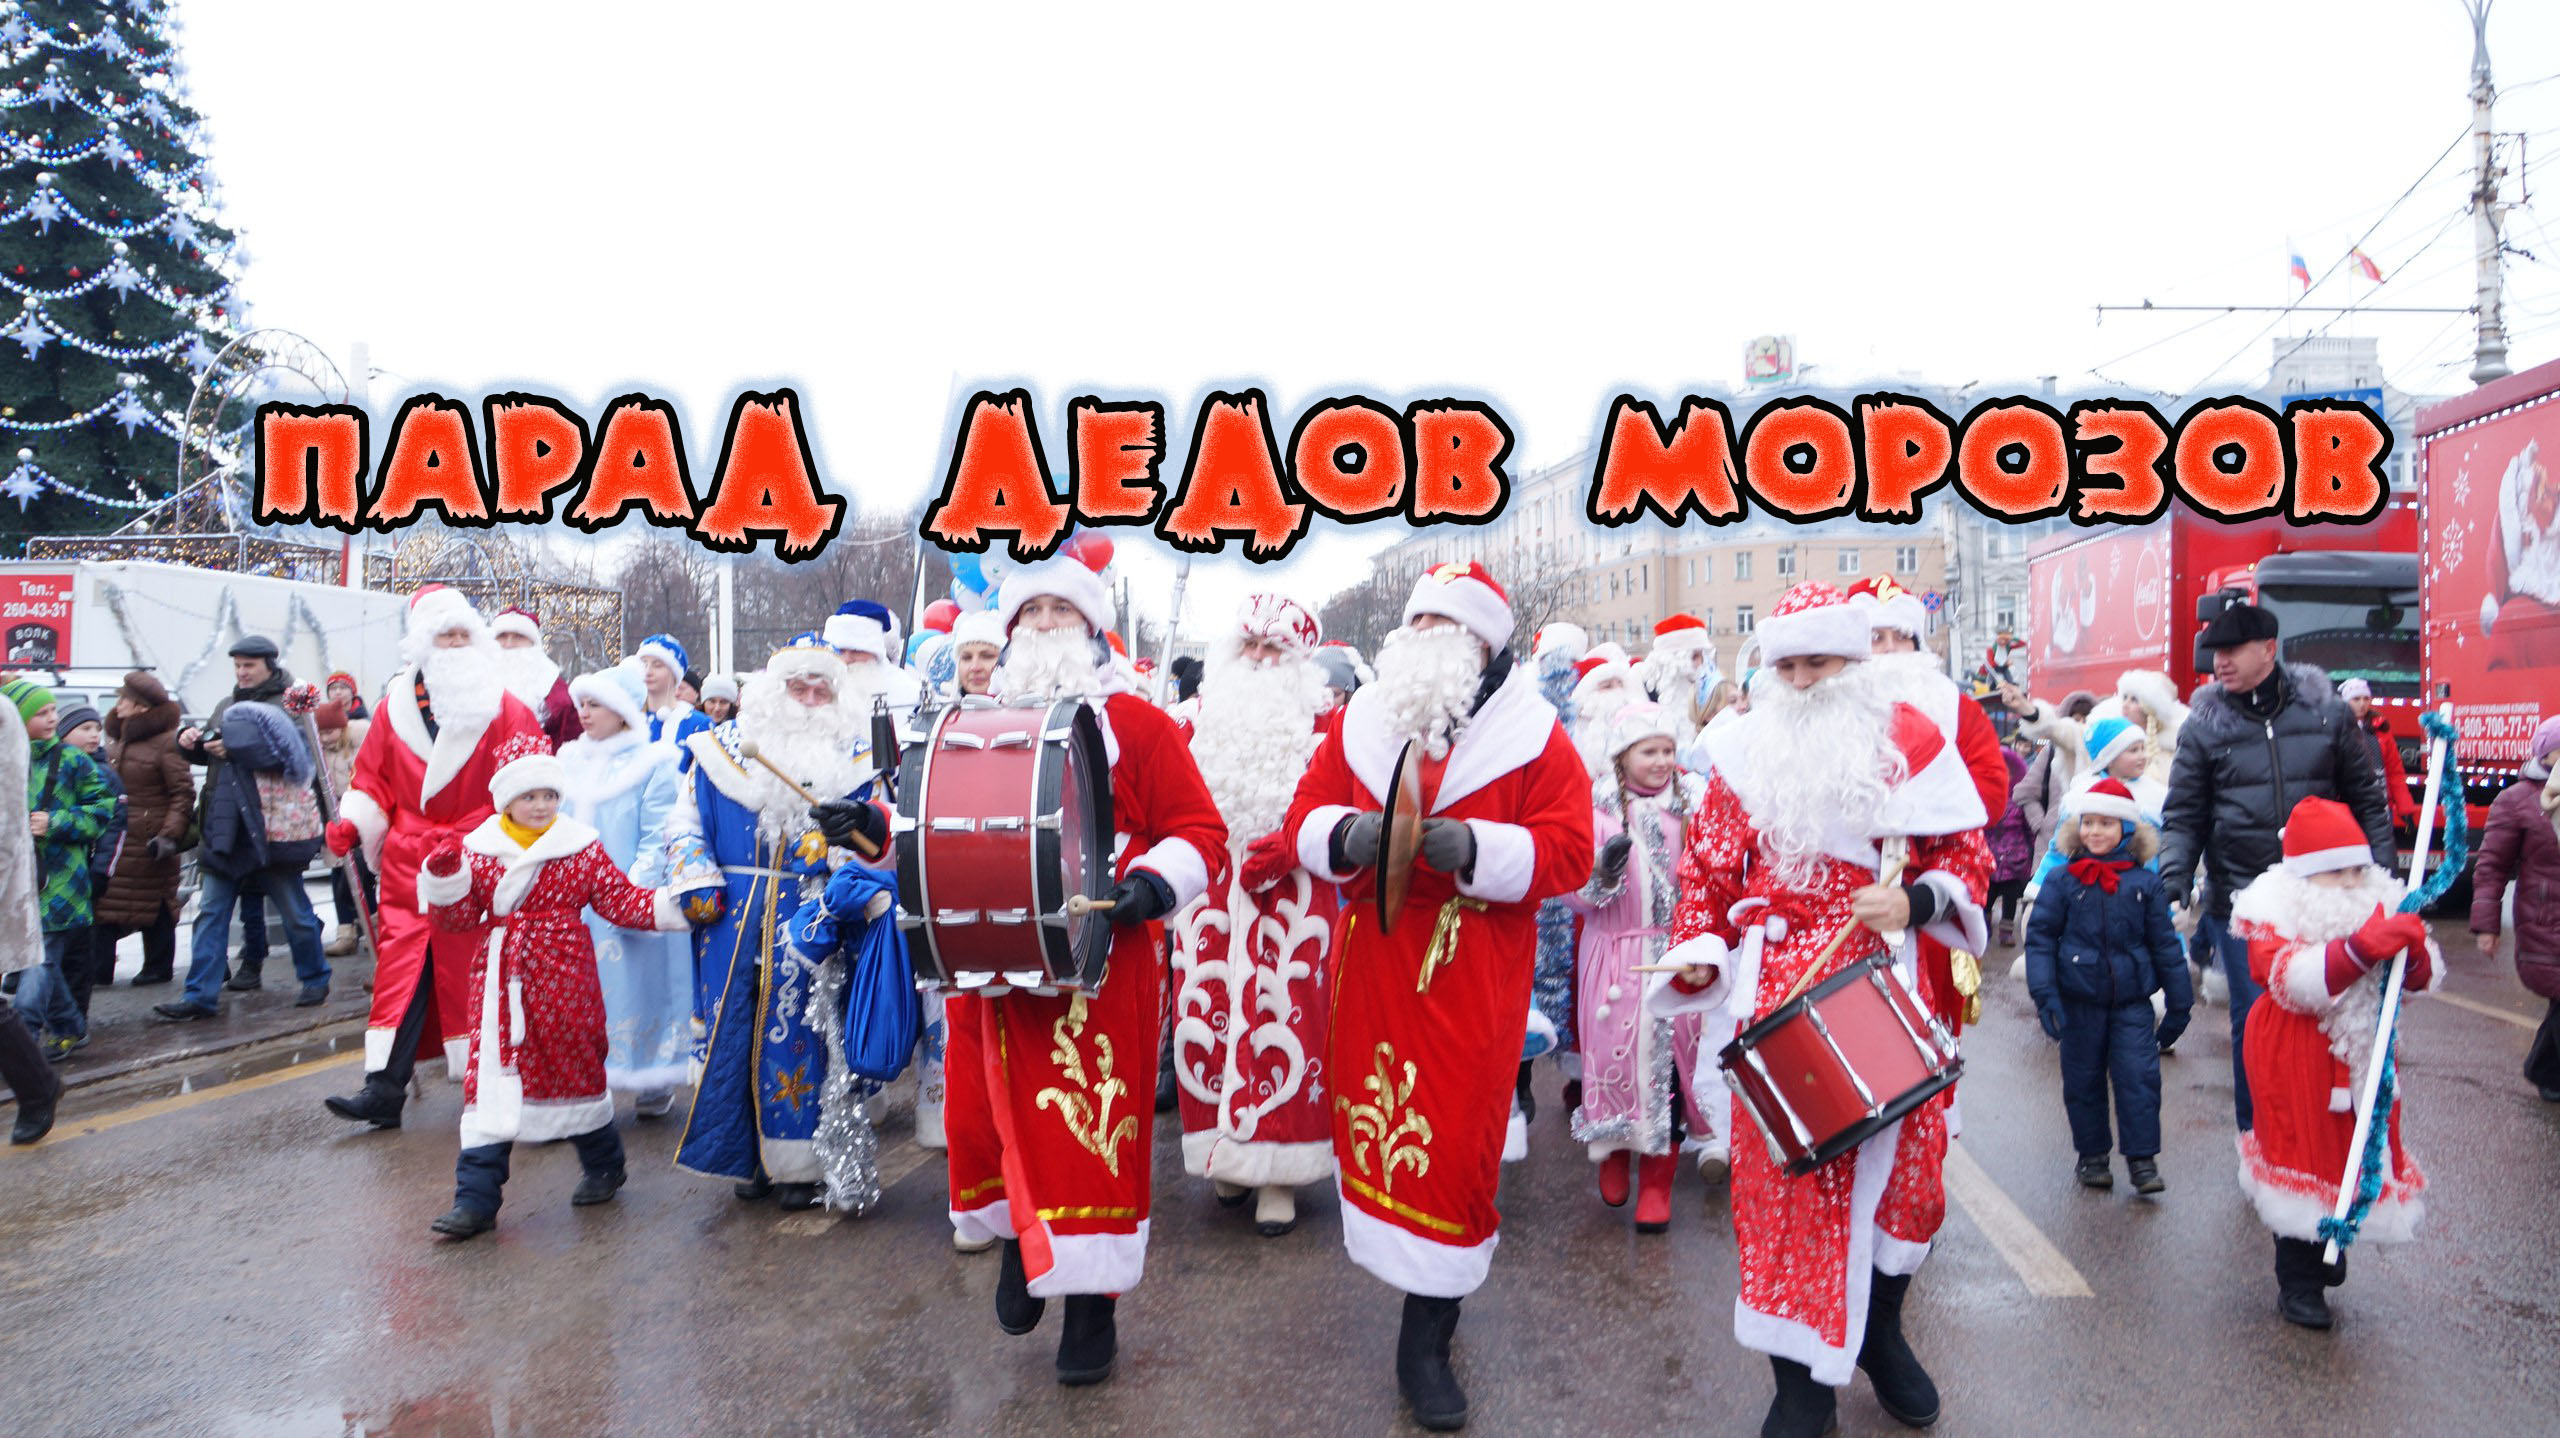 Парад дедов морозов в Пятигорске, городская сцена и награждение победителей, зажжение городской елки